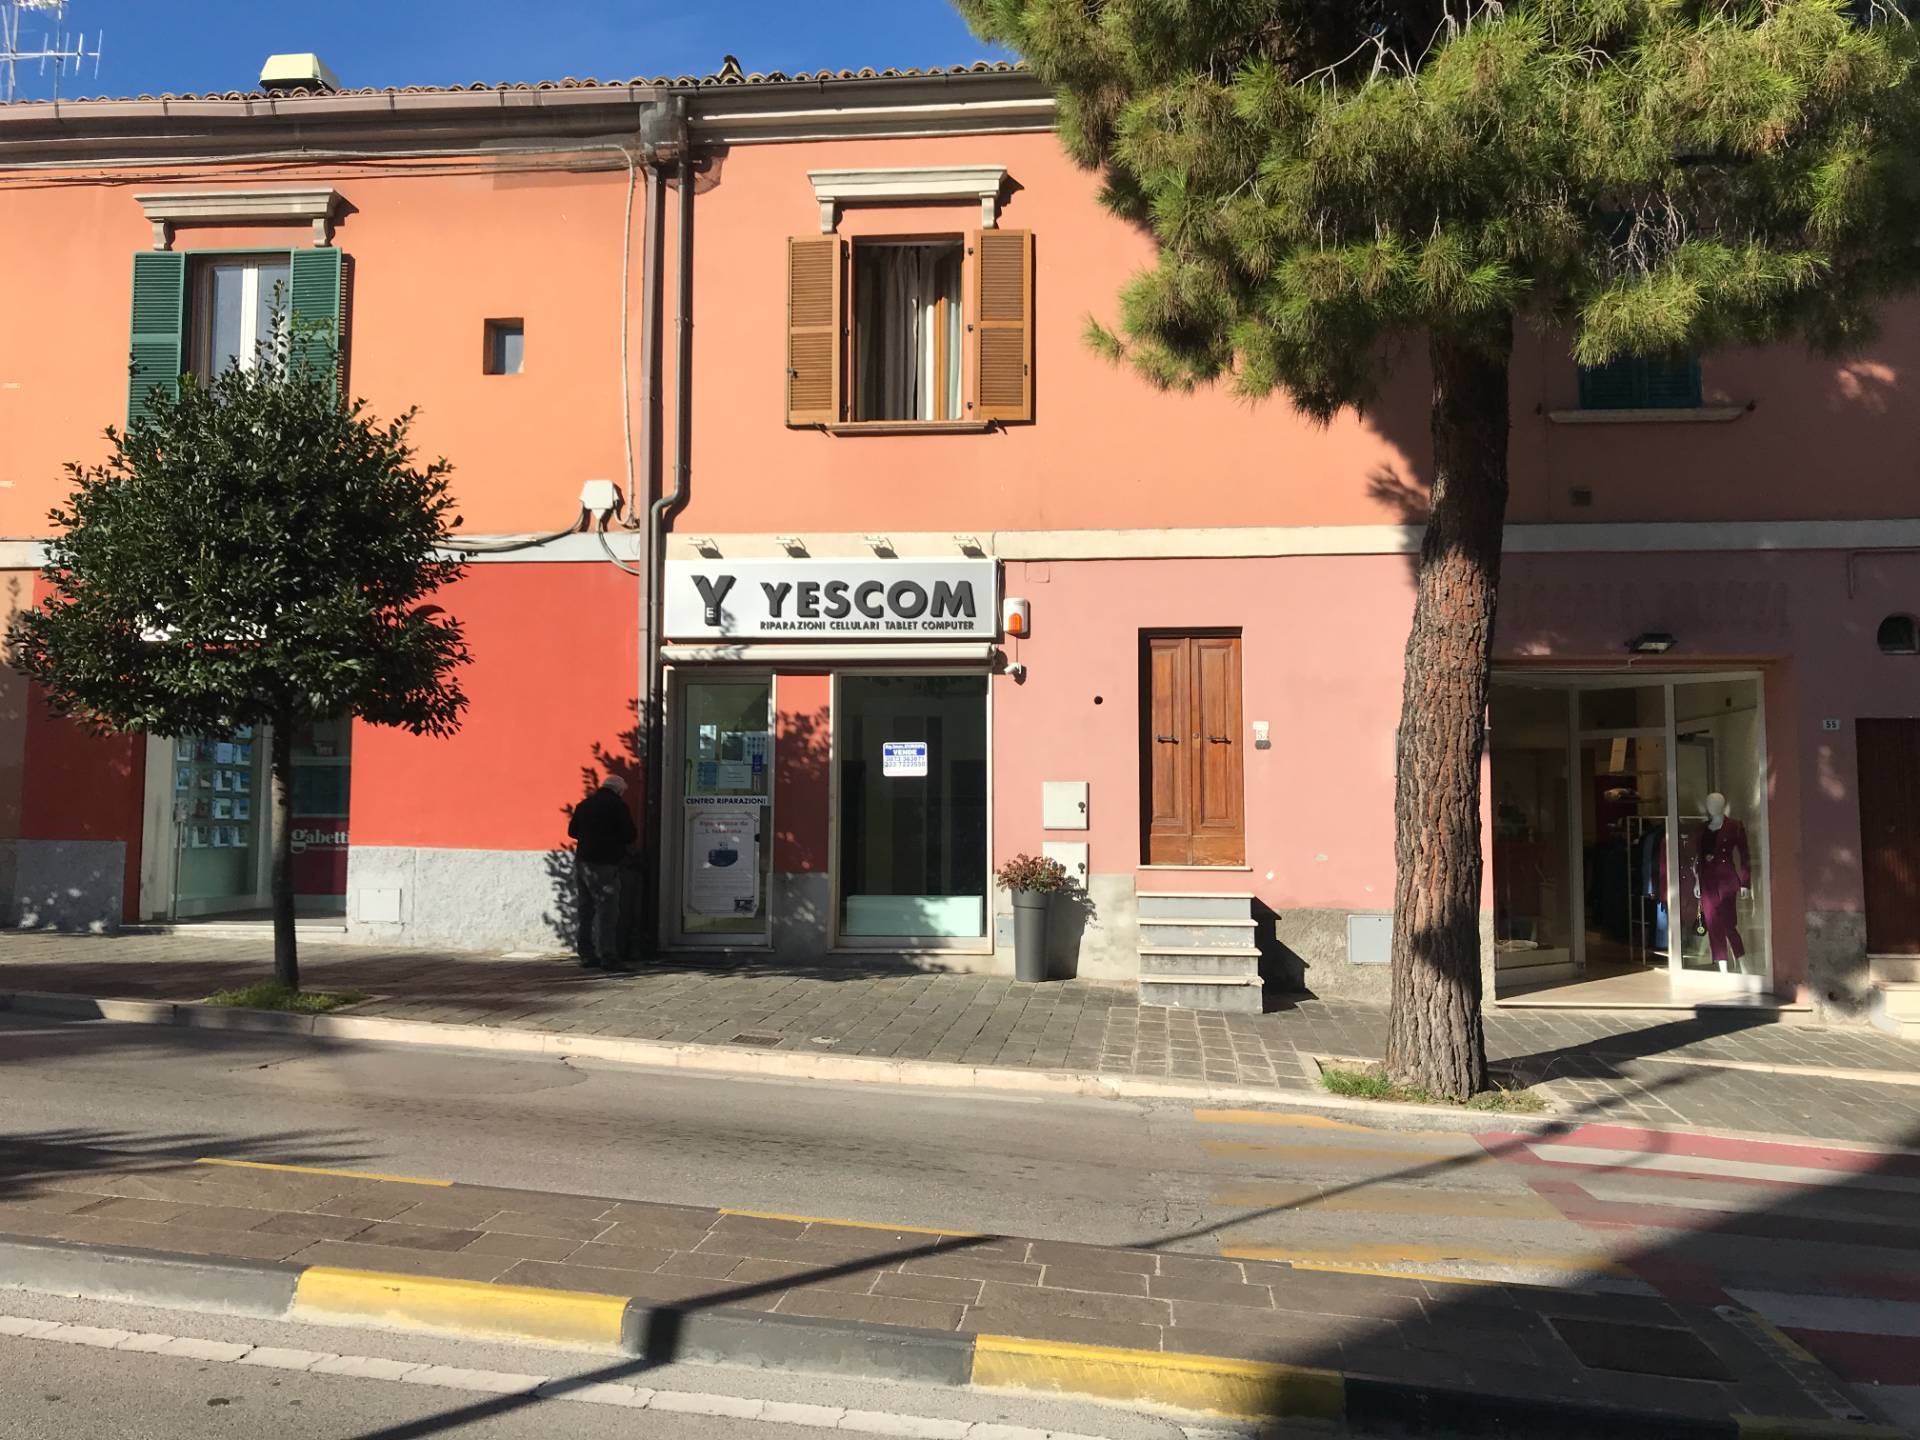 Negozio / Locale in affitto a Vasto, 9999 locali, zona Località: ZONACENTRALE, prezzo € 160.000 | CambioCasa.it